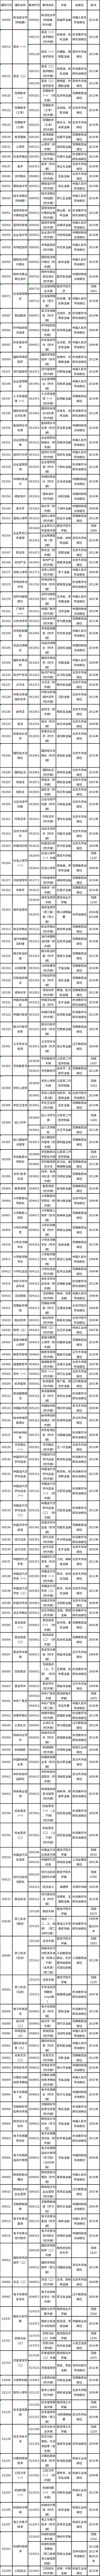 江苏省2023年4月高等教育自学考试开考课程教材计划表